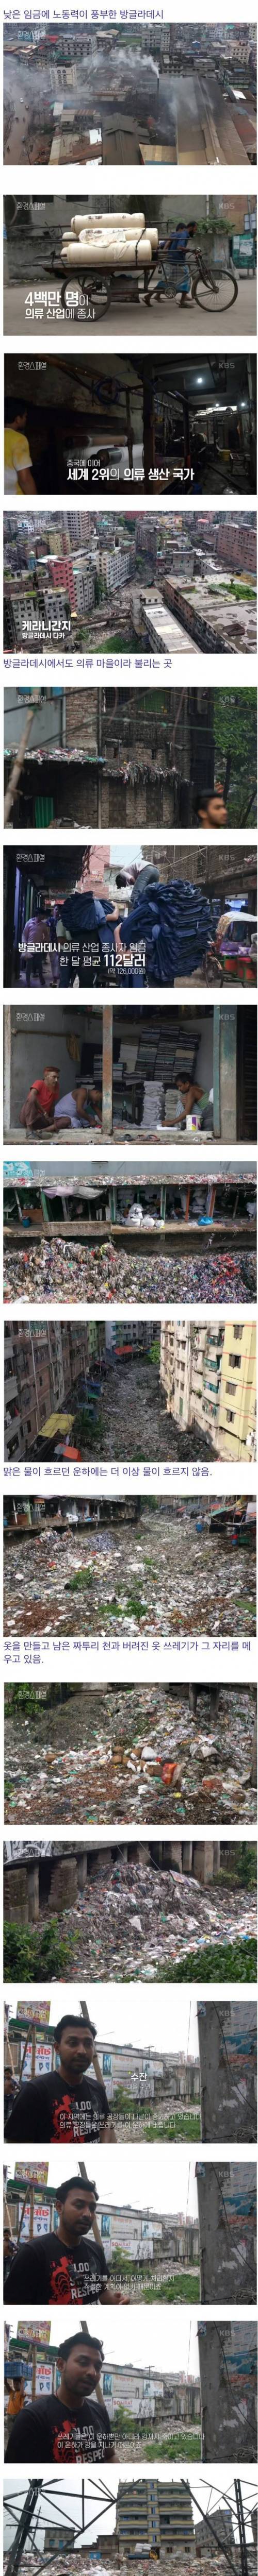 [스압] 의류 공장으로 더렵혀진 방글라데시의 땅.jpg